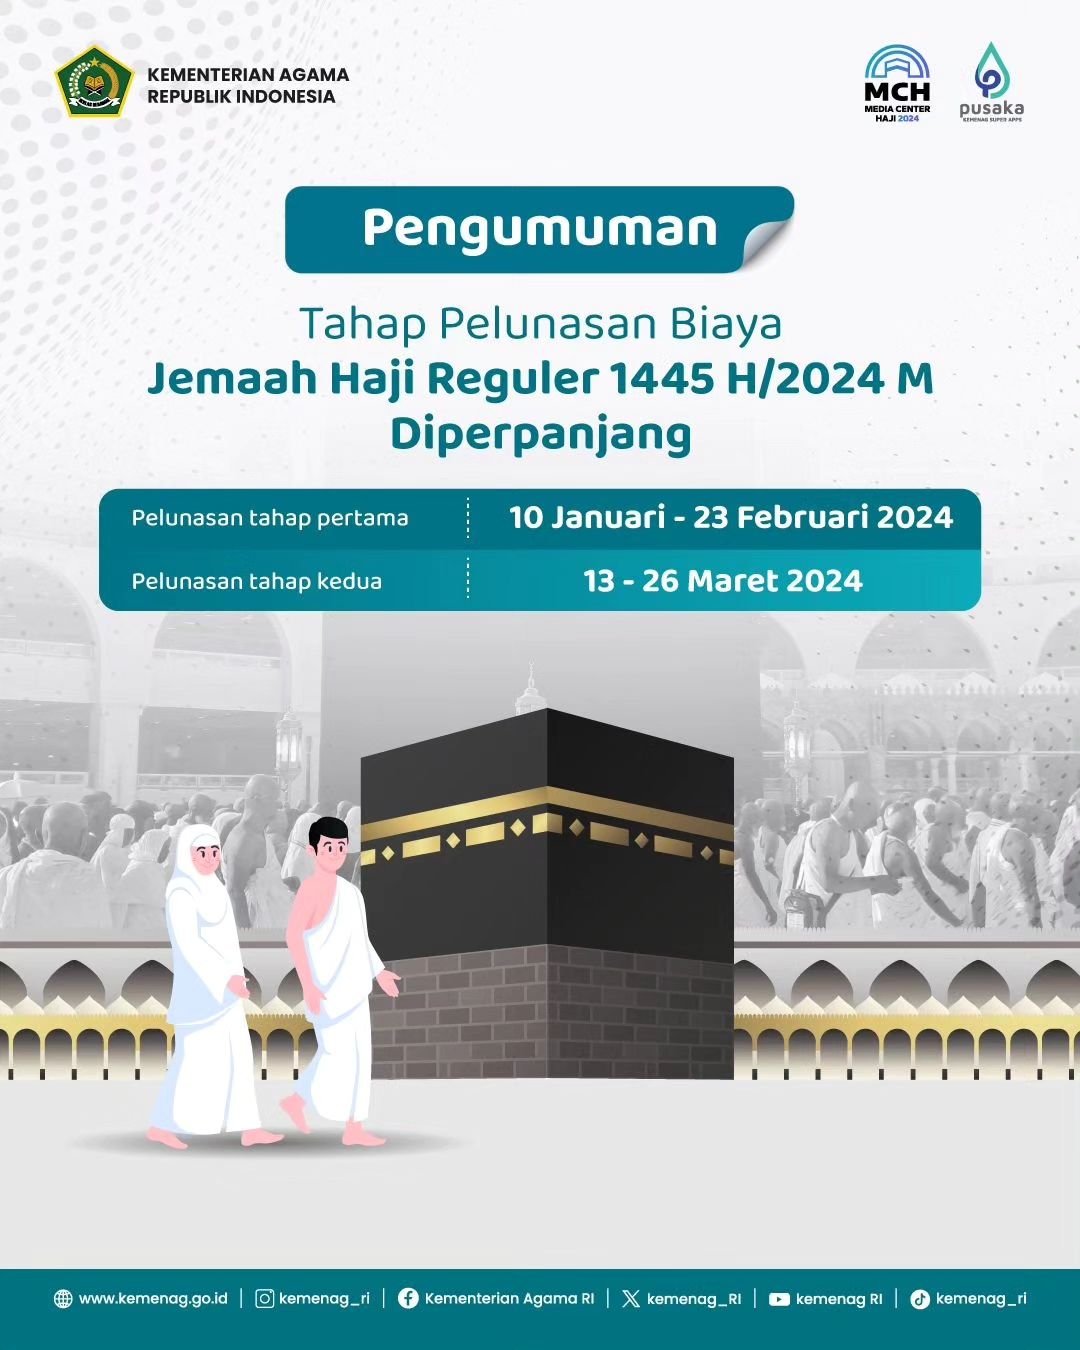 Tahap Pelunasan Biaya Haji Reguler 1445 H/2024 M Diperpanjang